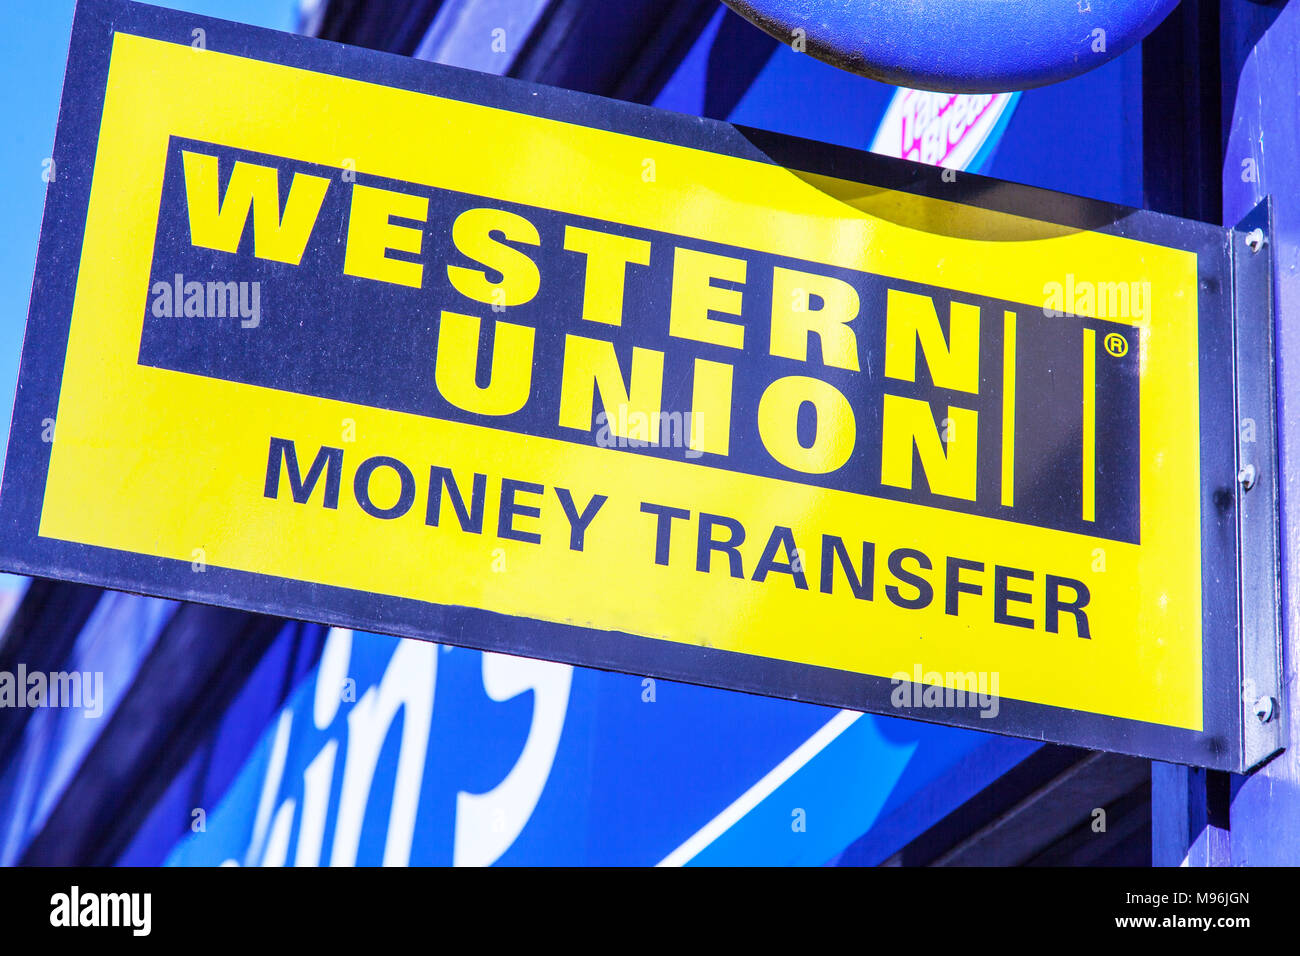 Western Union Money Transfer Shop Banque d'image et photos - Alamy